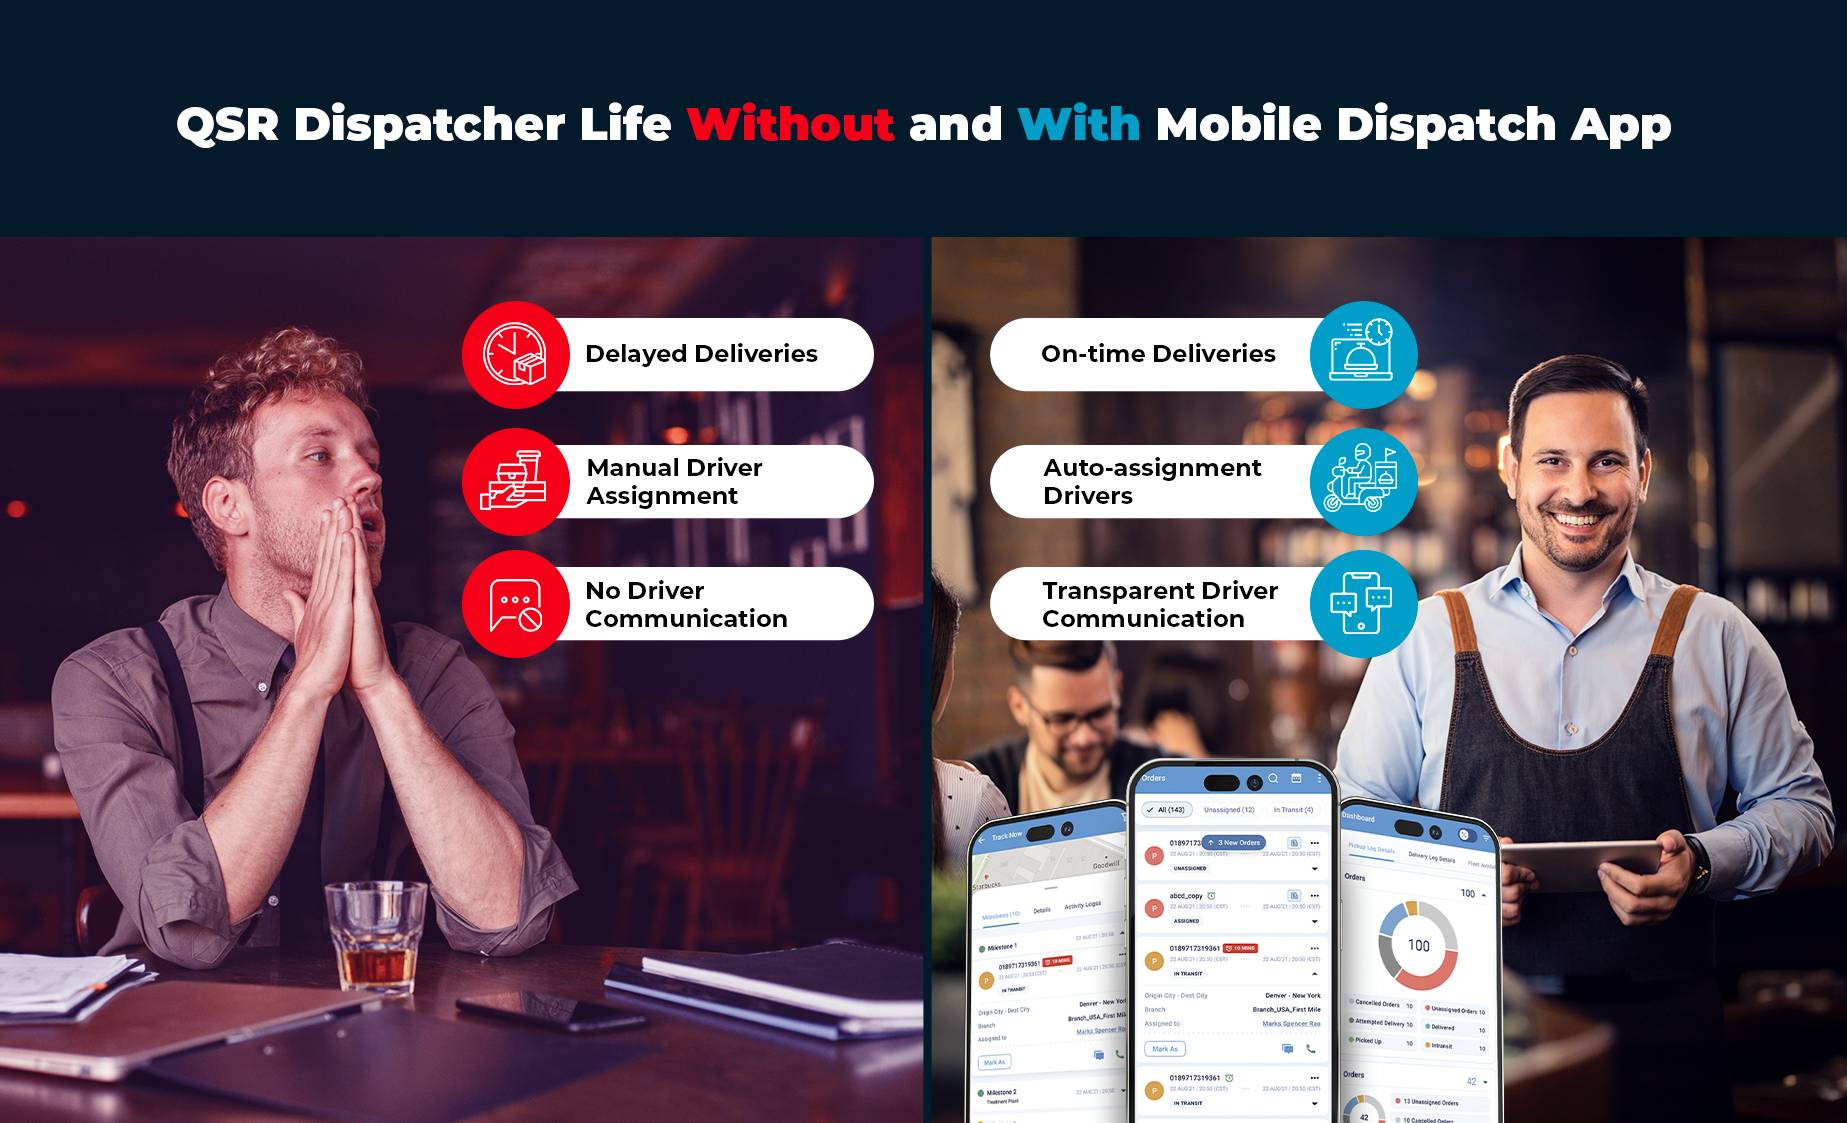 חיי ה-Dispatcher עם ובלי אפליקציה לנייד